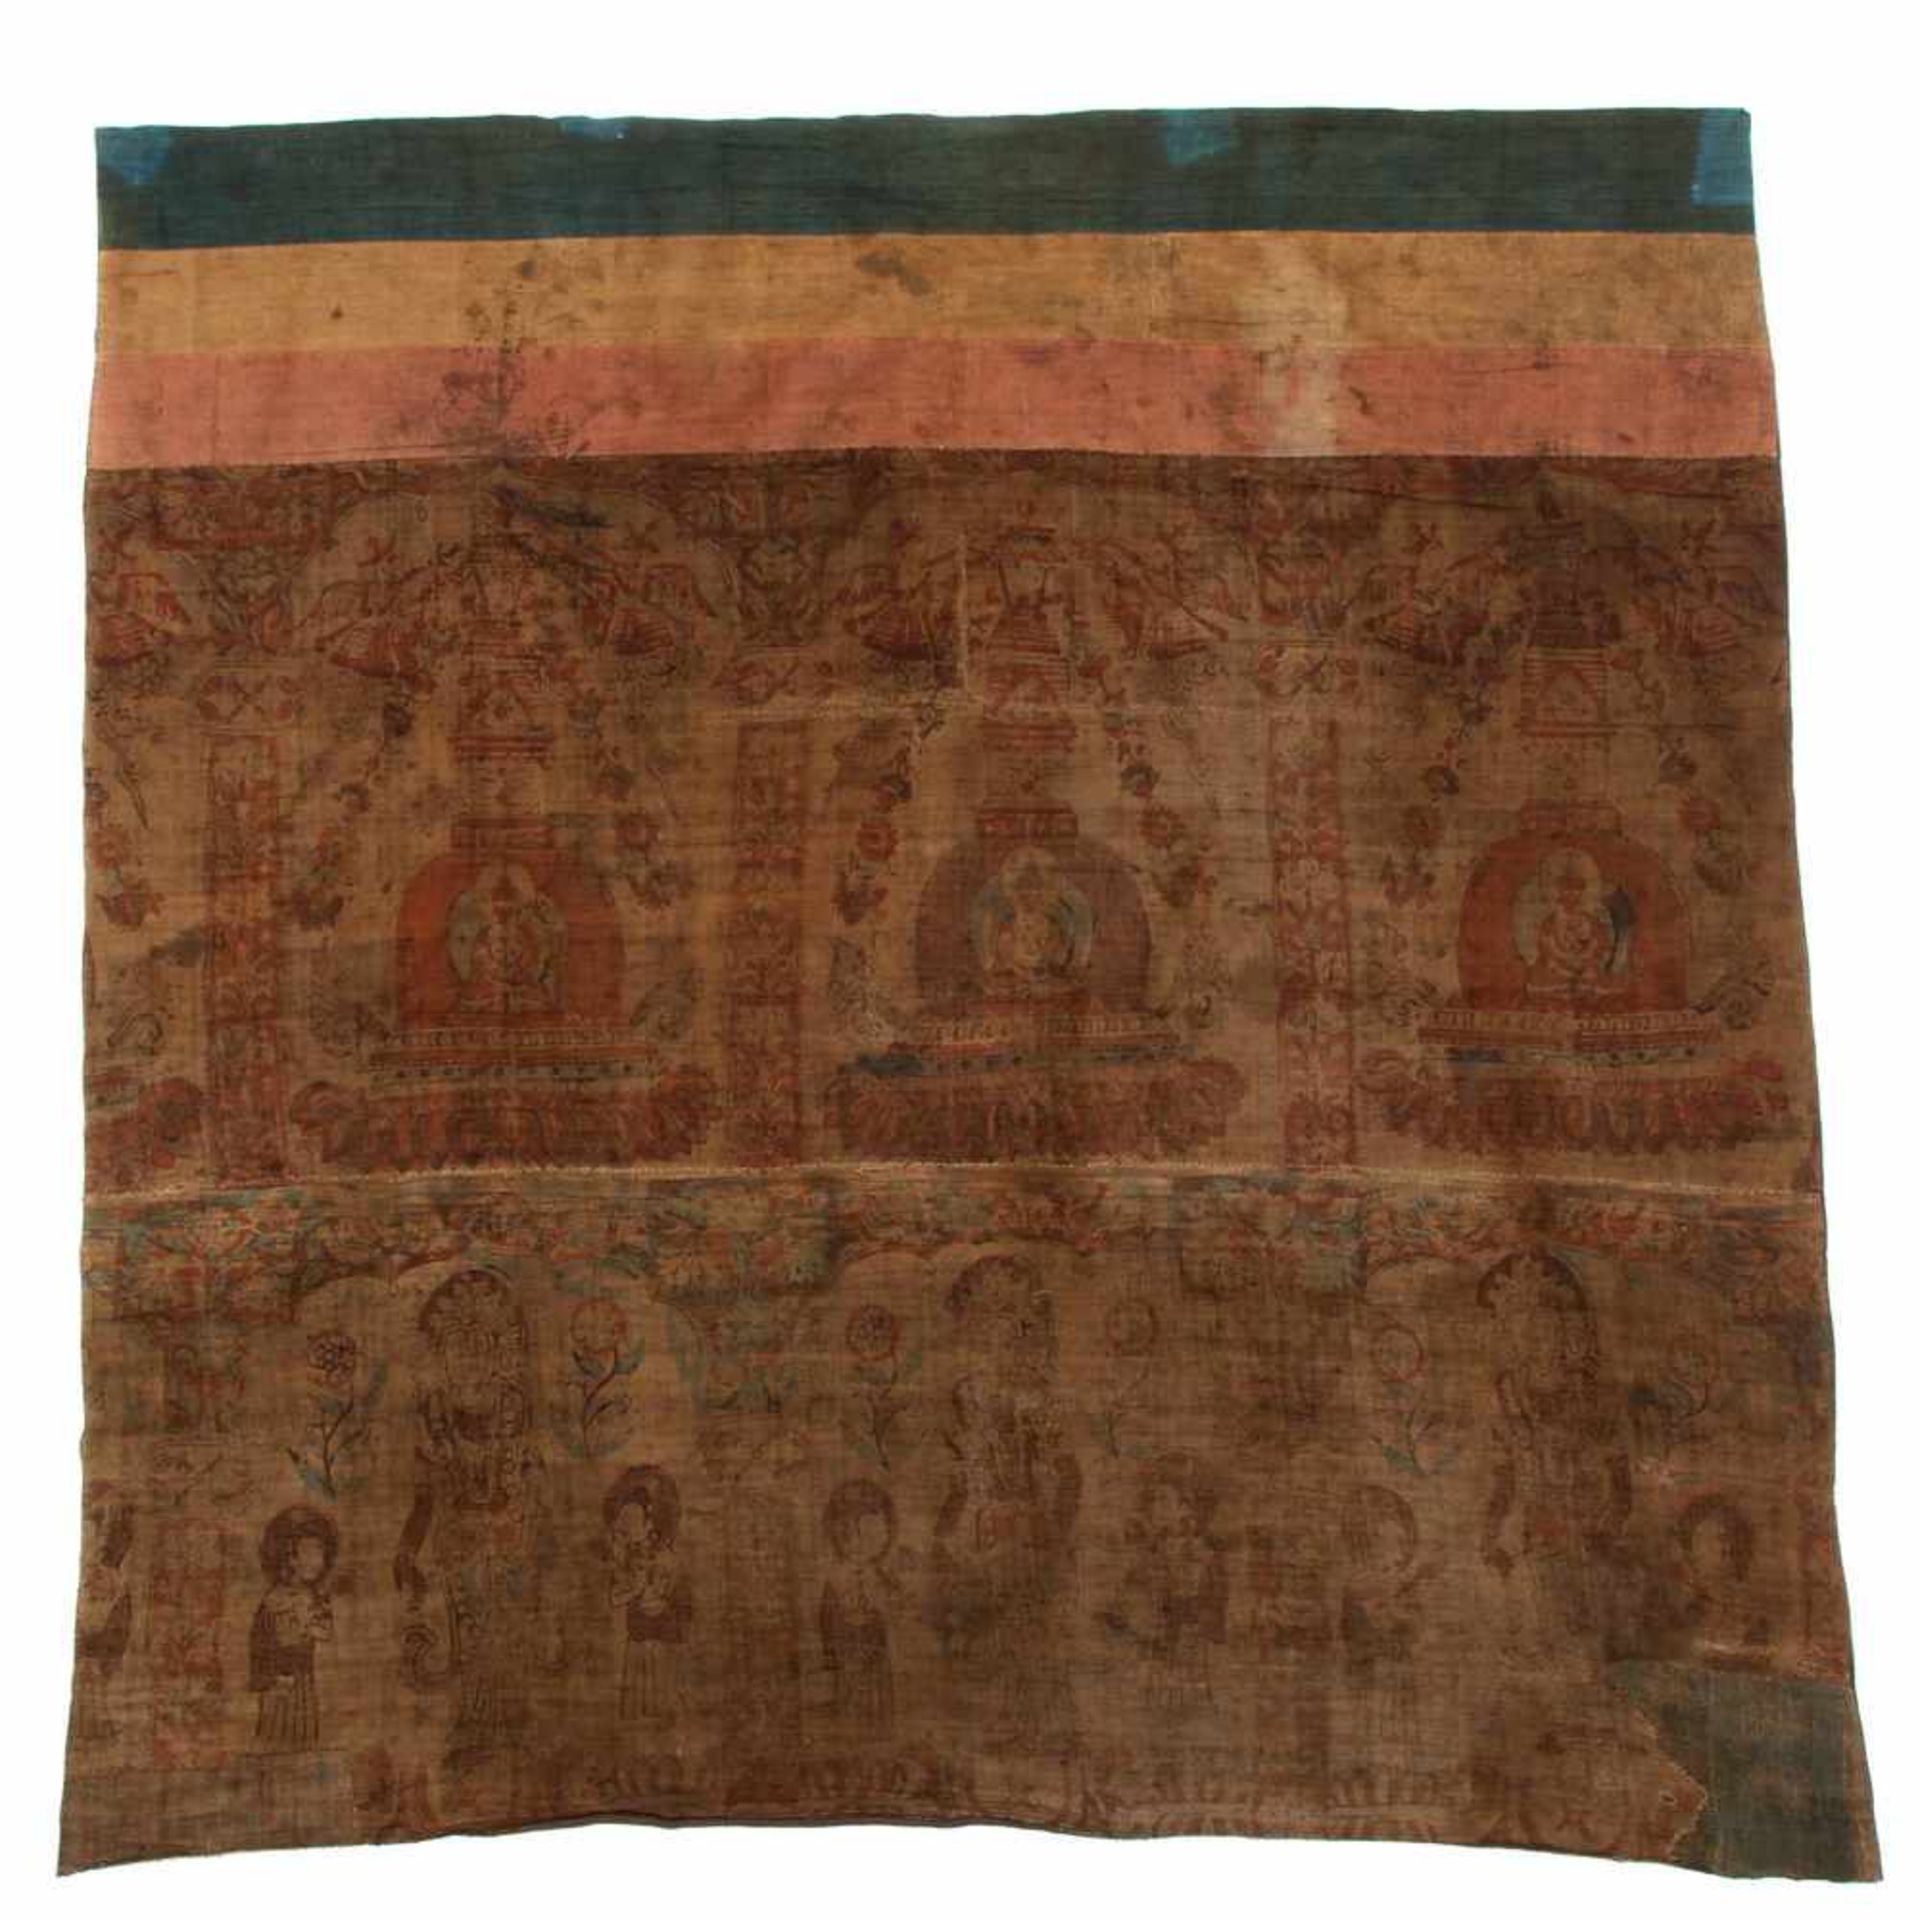 China, twee beschilderde antieke katoenen doeken,uit samengestelde delen, een rand waarop drie - Bild 2 aus 2